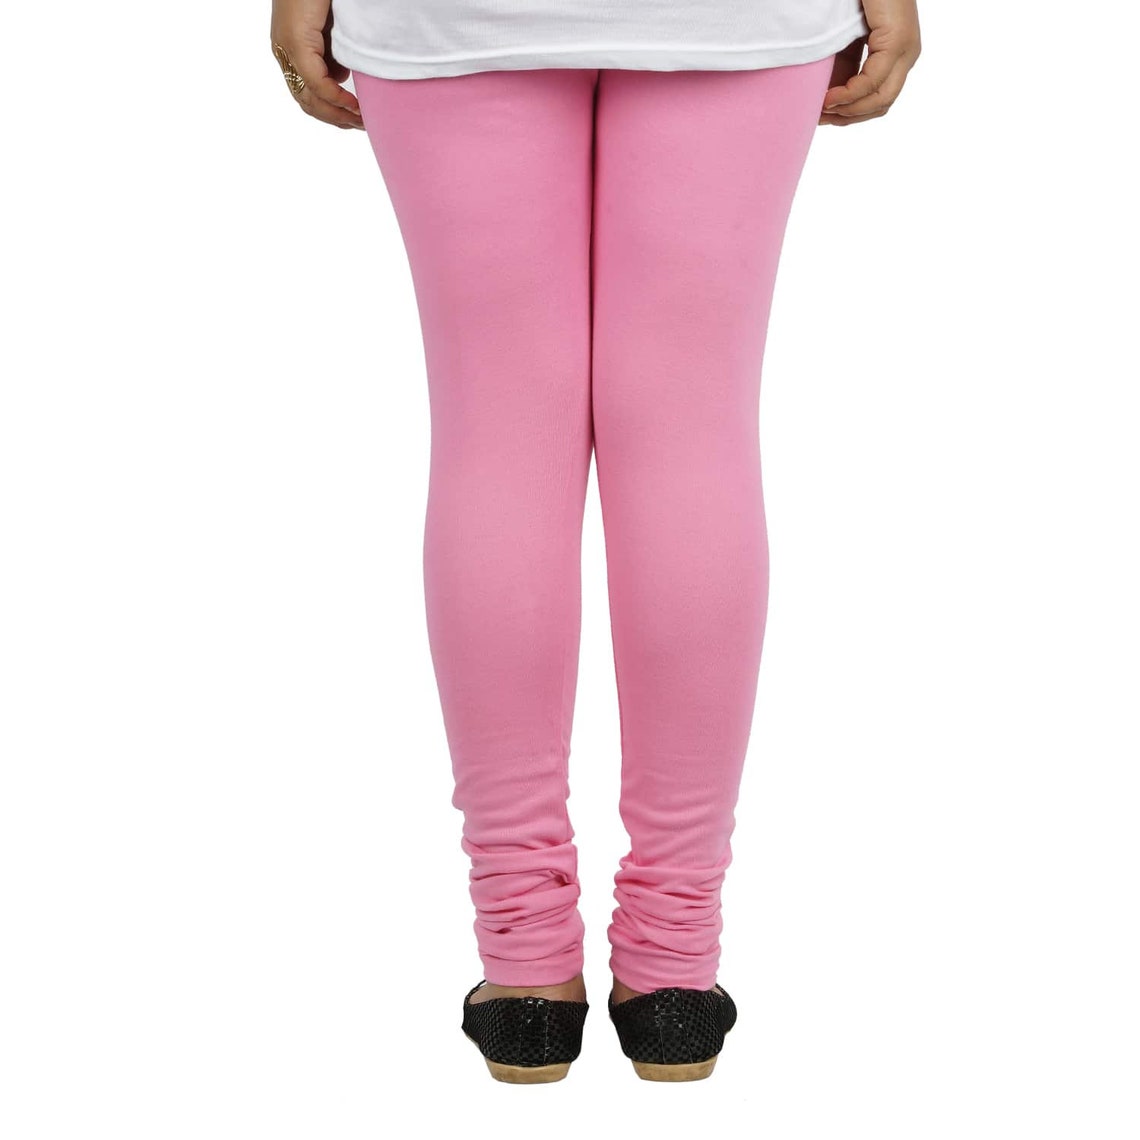 Baby Pink color sport Leggings women leggings morning walk | Etsy